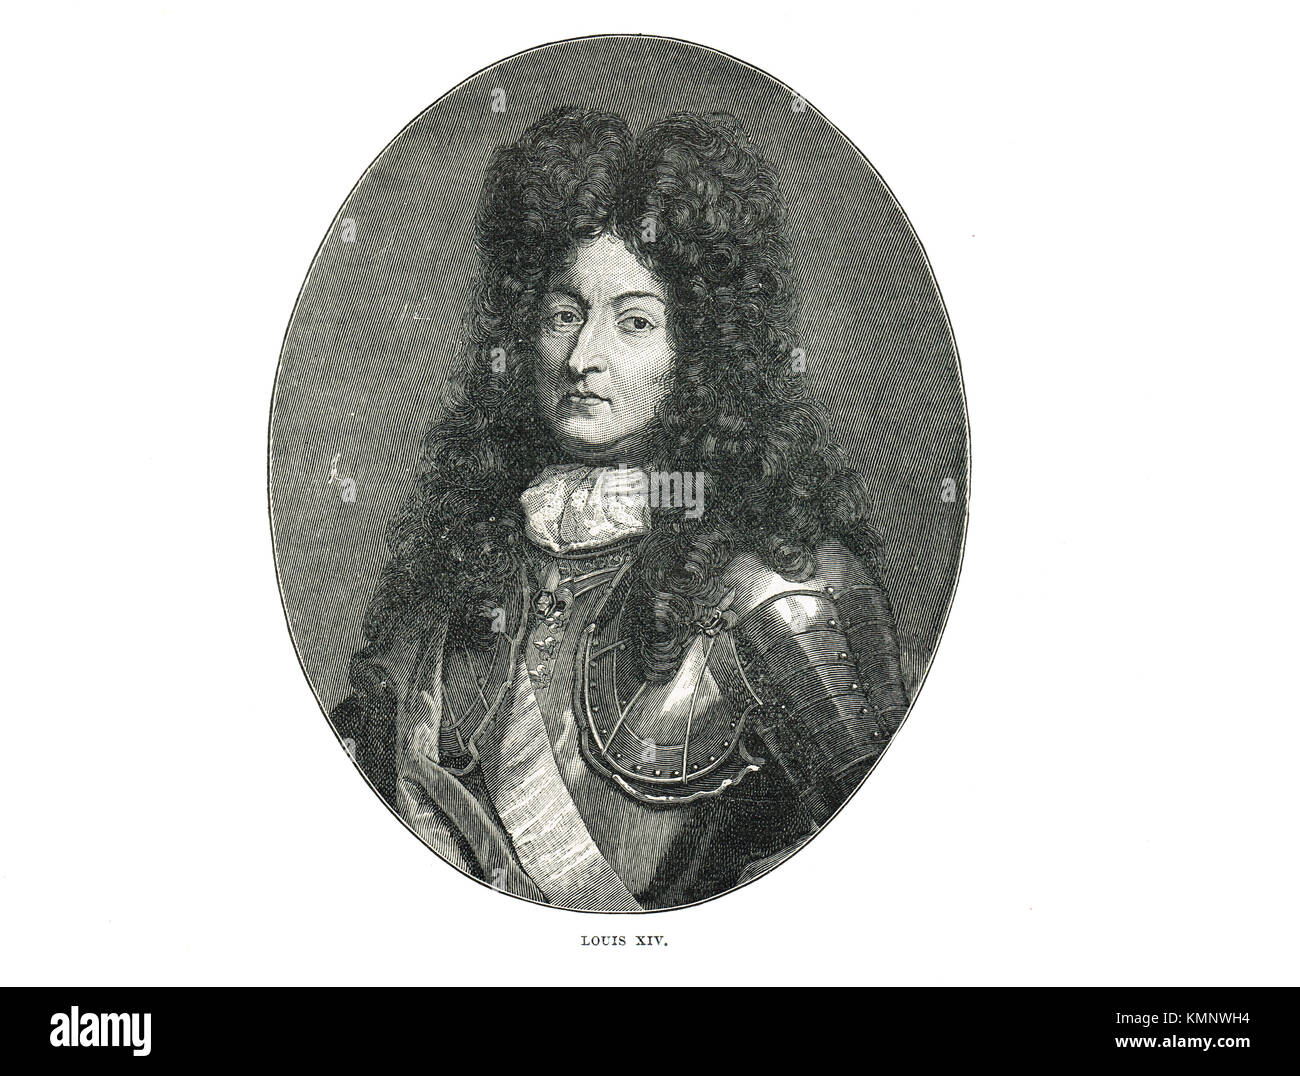 Ludwig XIV. von Frankreich, der Sonnenkönig (1638-1715), regierte 1643-1715 Stockfoto